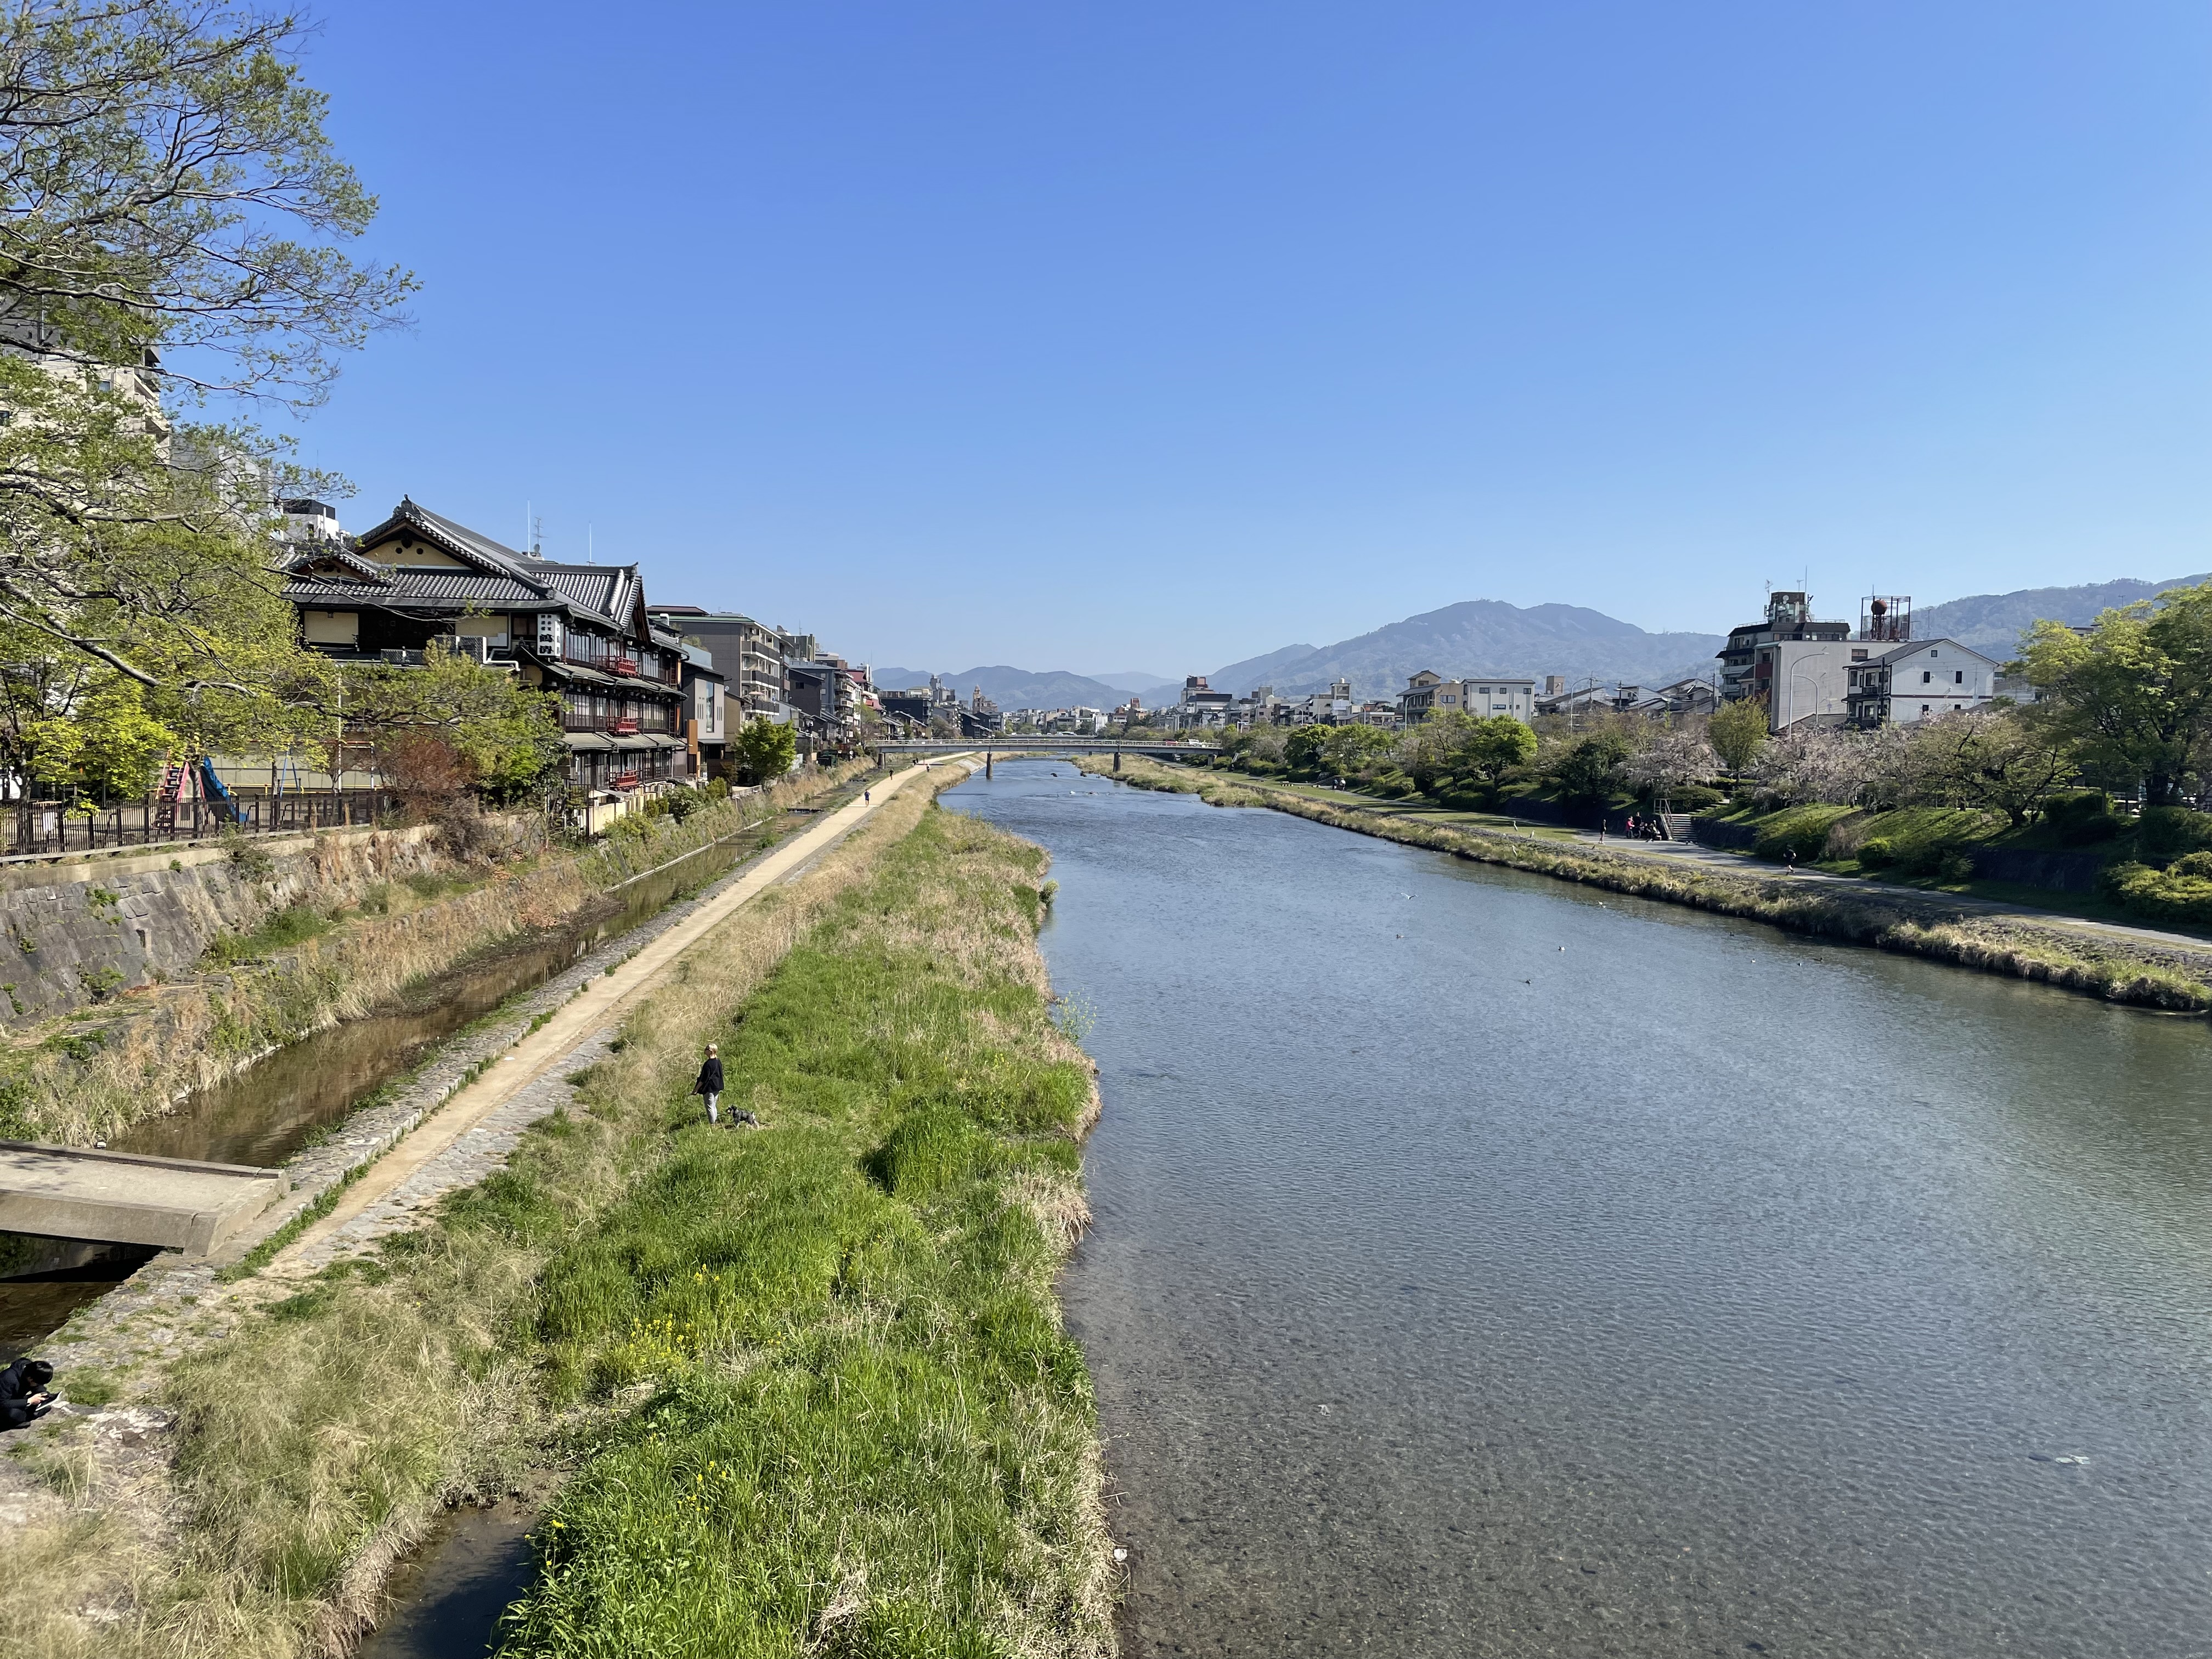 View along Kamogawa